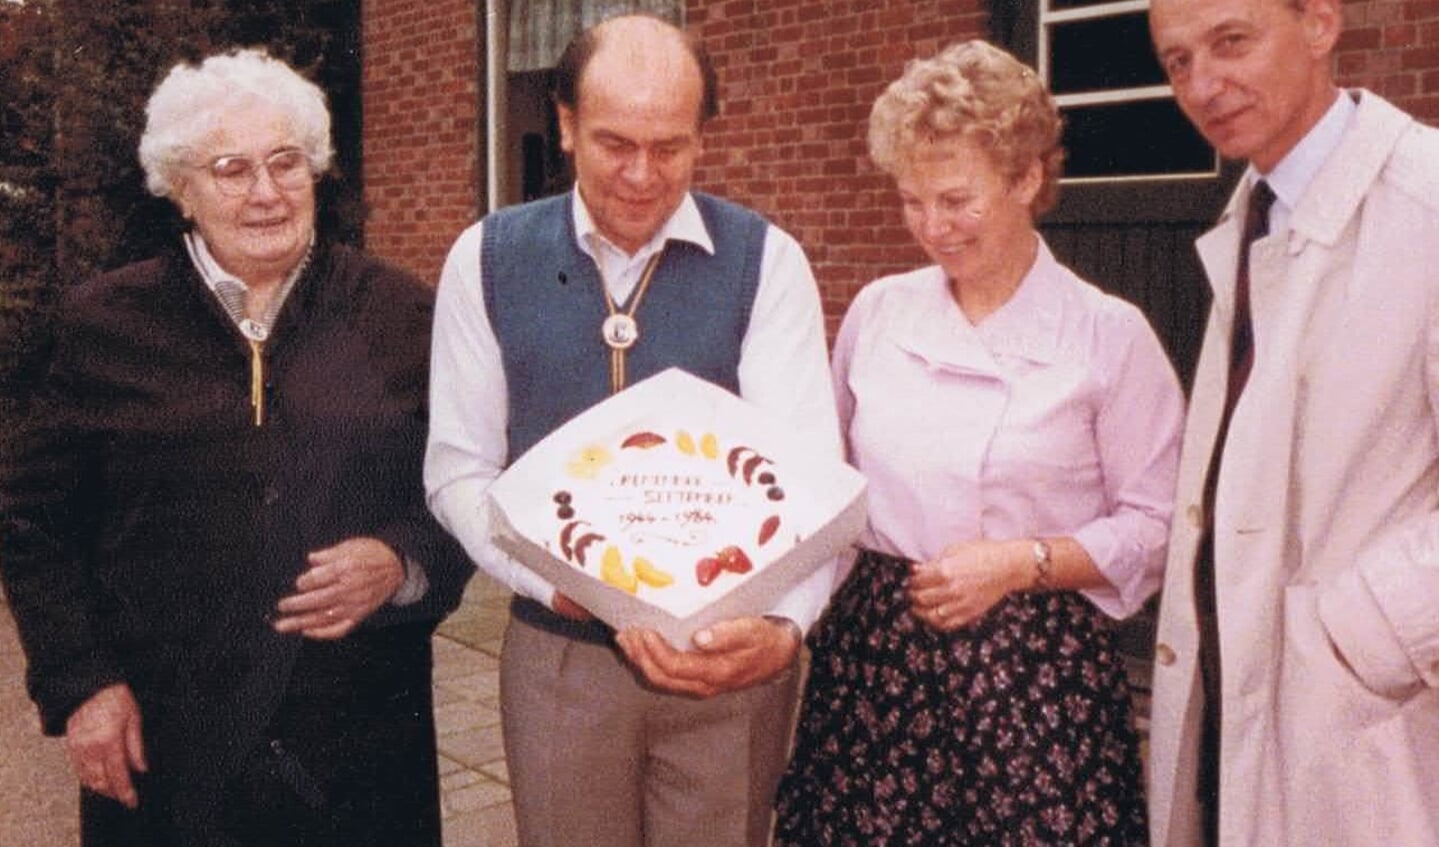 Als blijk van dank ontvangt Wan van Overveld, samen met zijn moeder Pita en vrouw Marietje, een taart uit handen van de Sonse burgemeester Bonnier